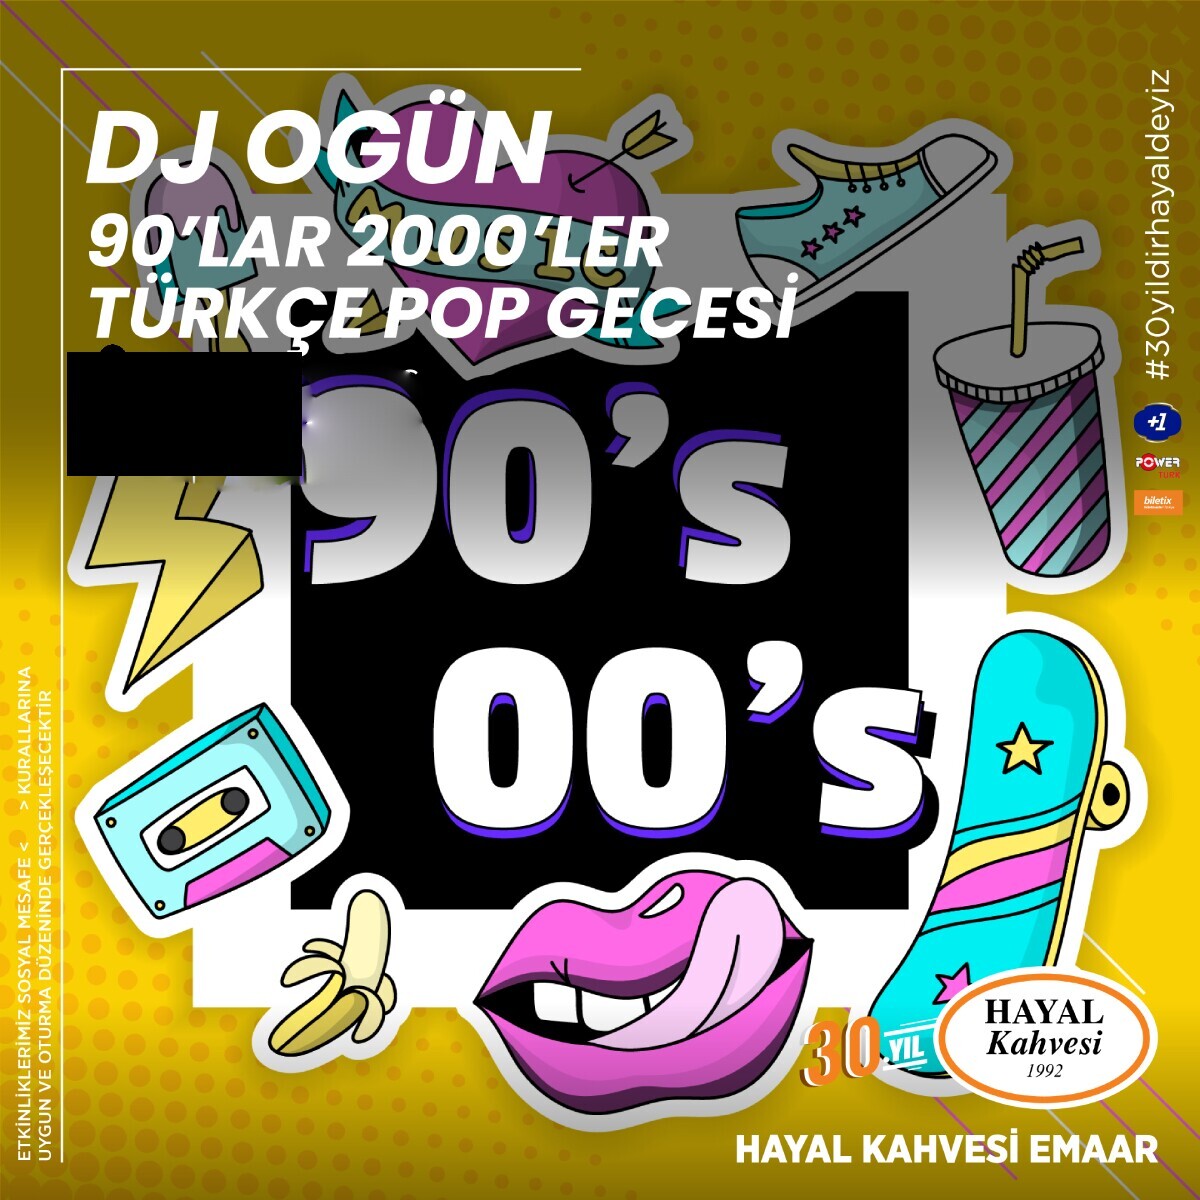 DJ Ogün 90'lar Parti Hayal Kahvesi Emaar Konser Bileti